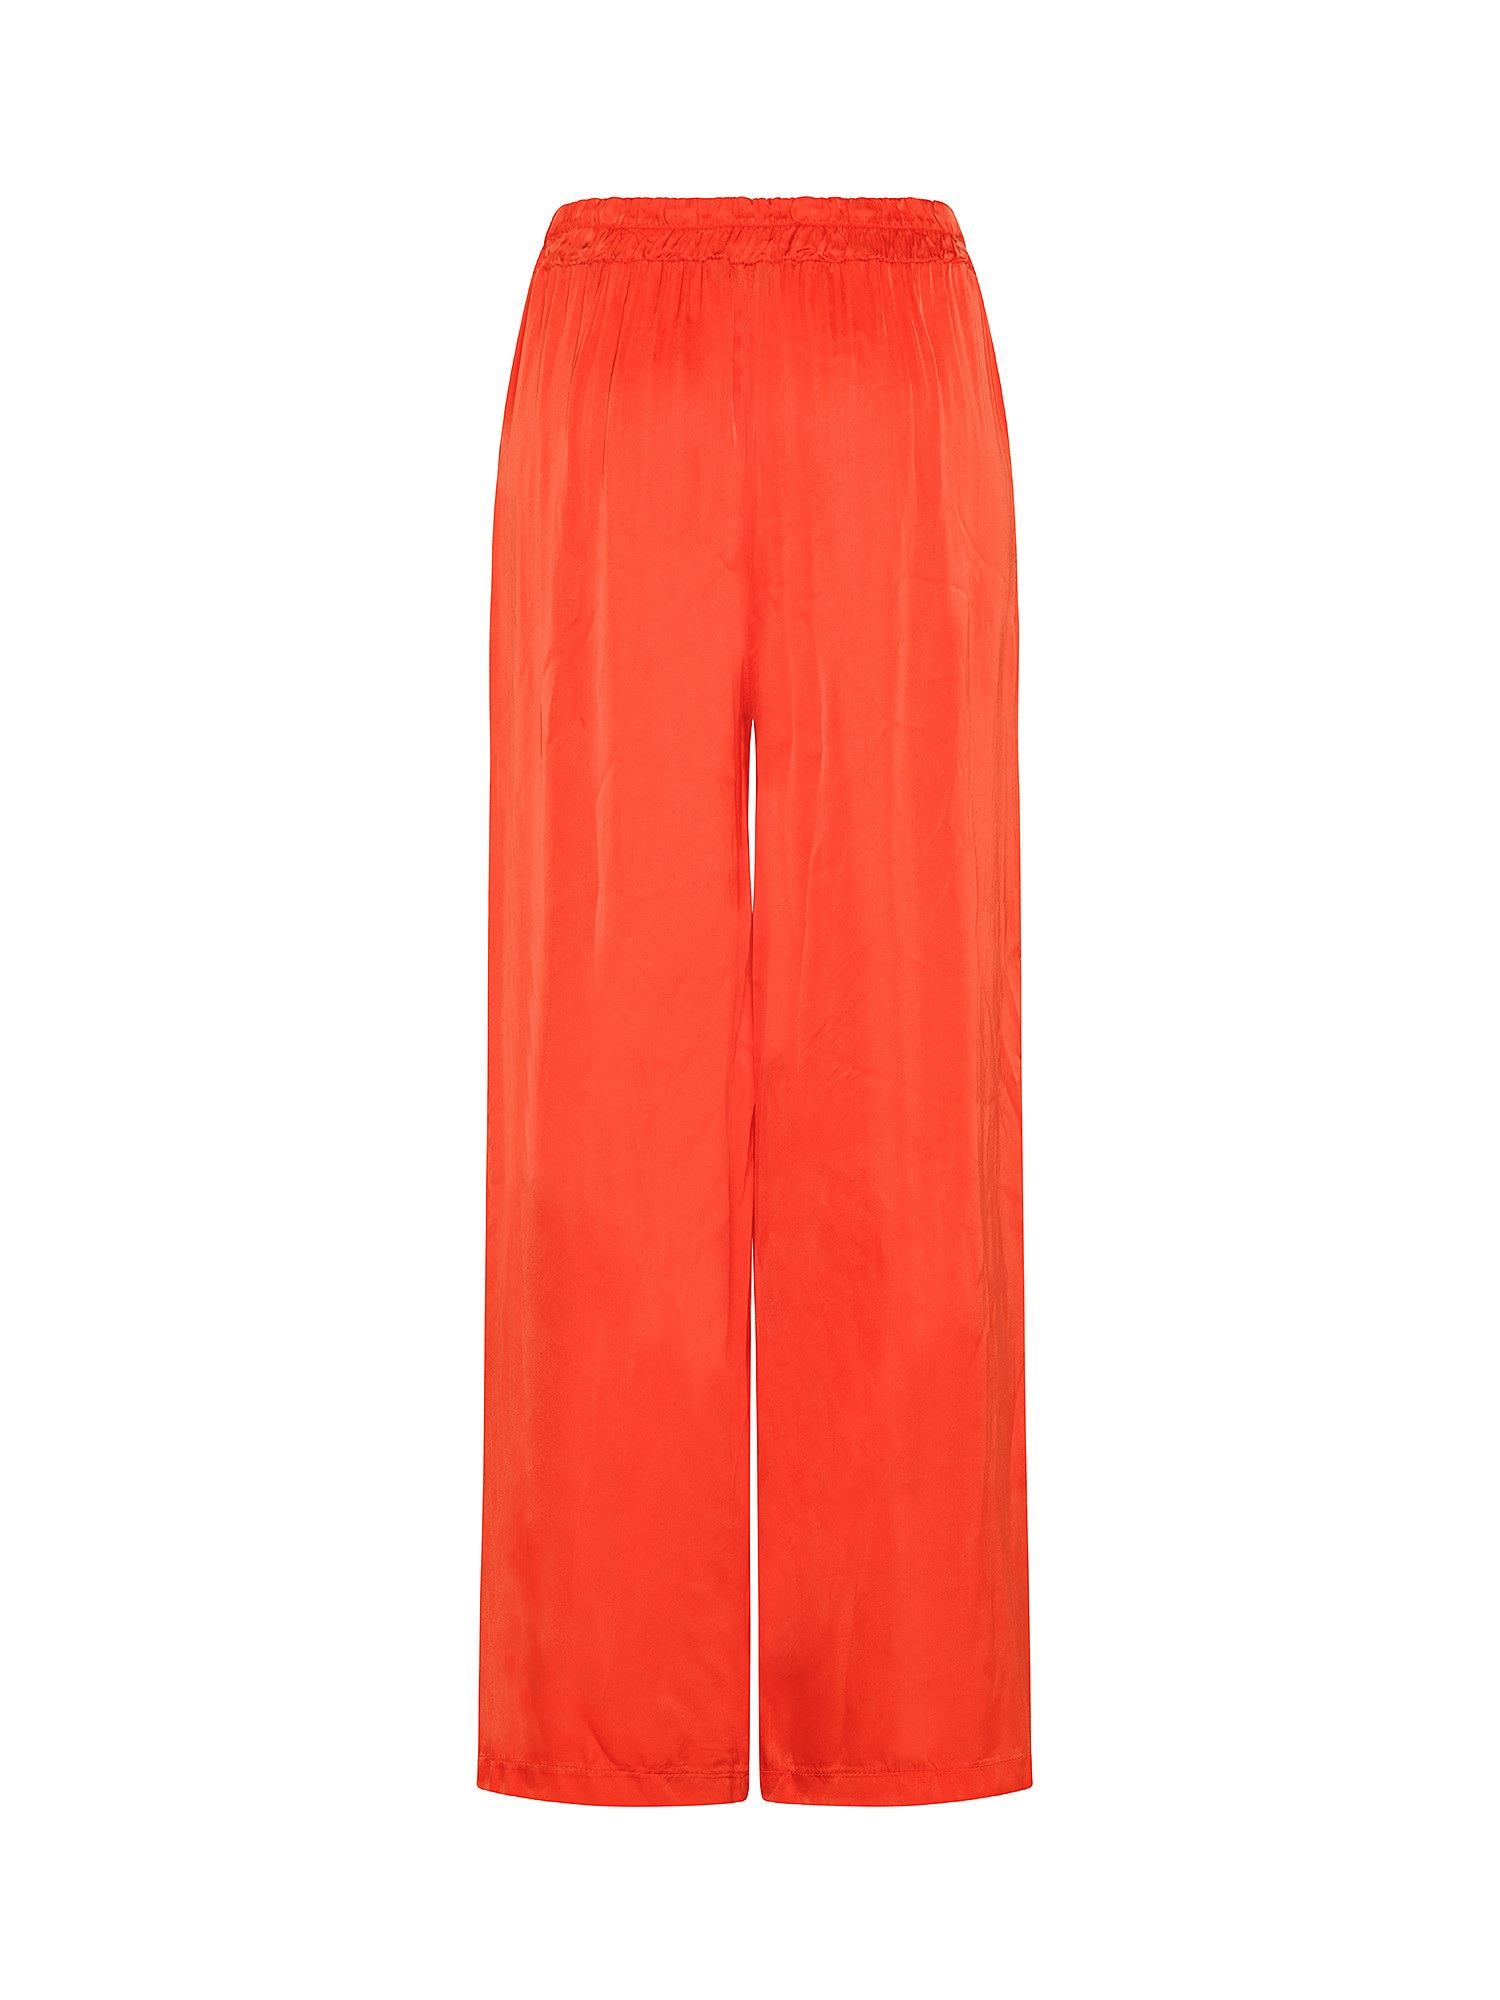 Pantalone in viscosa, Arancione, large